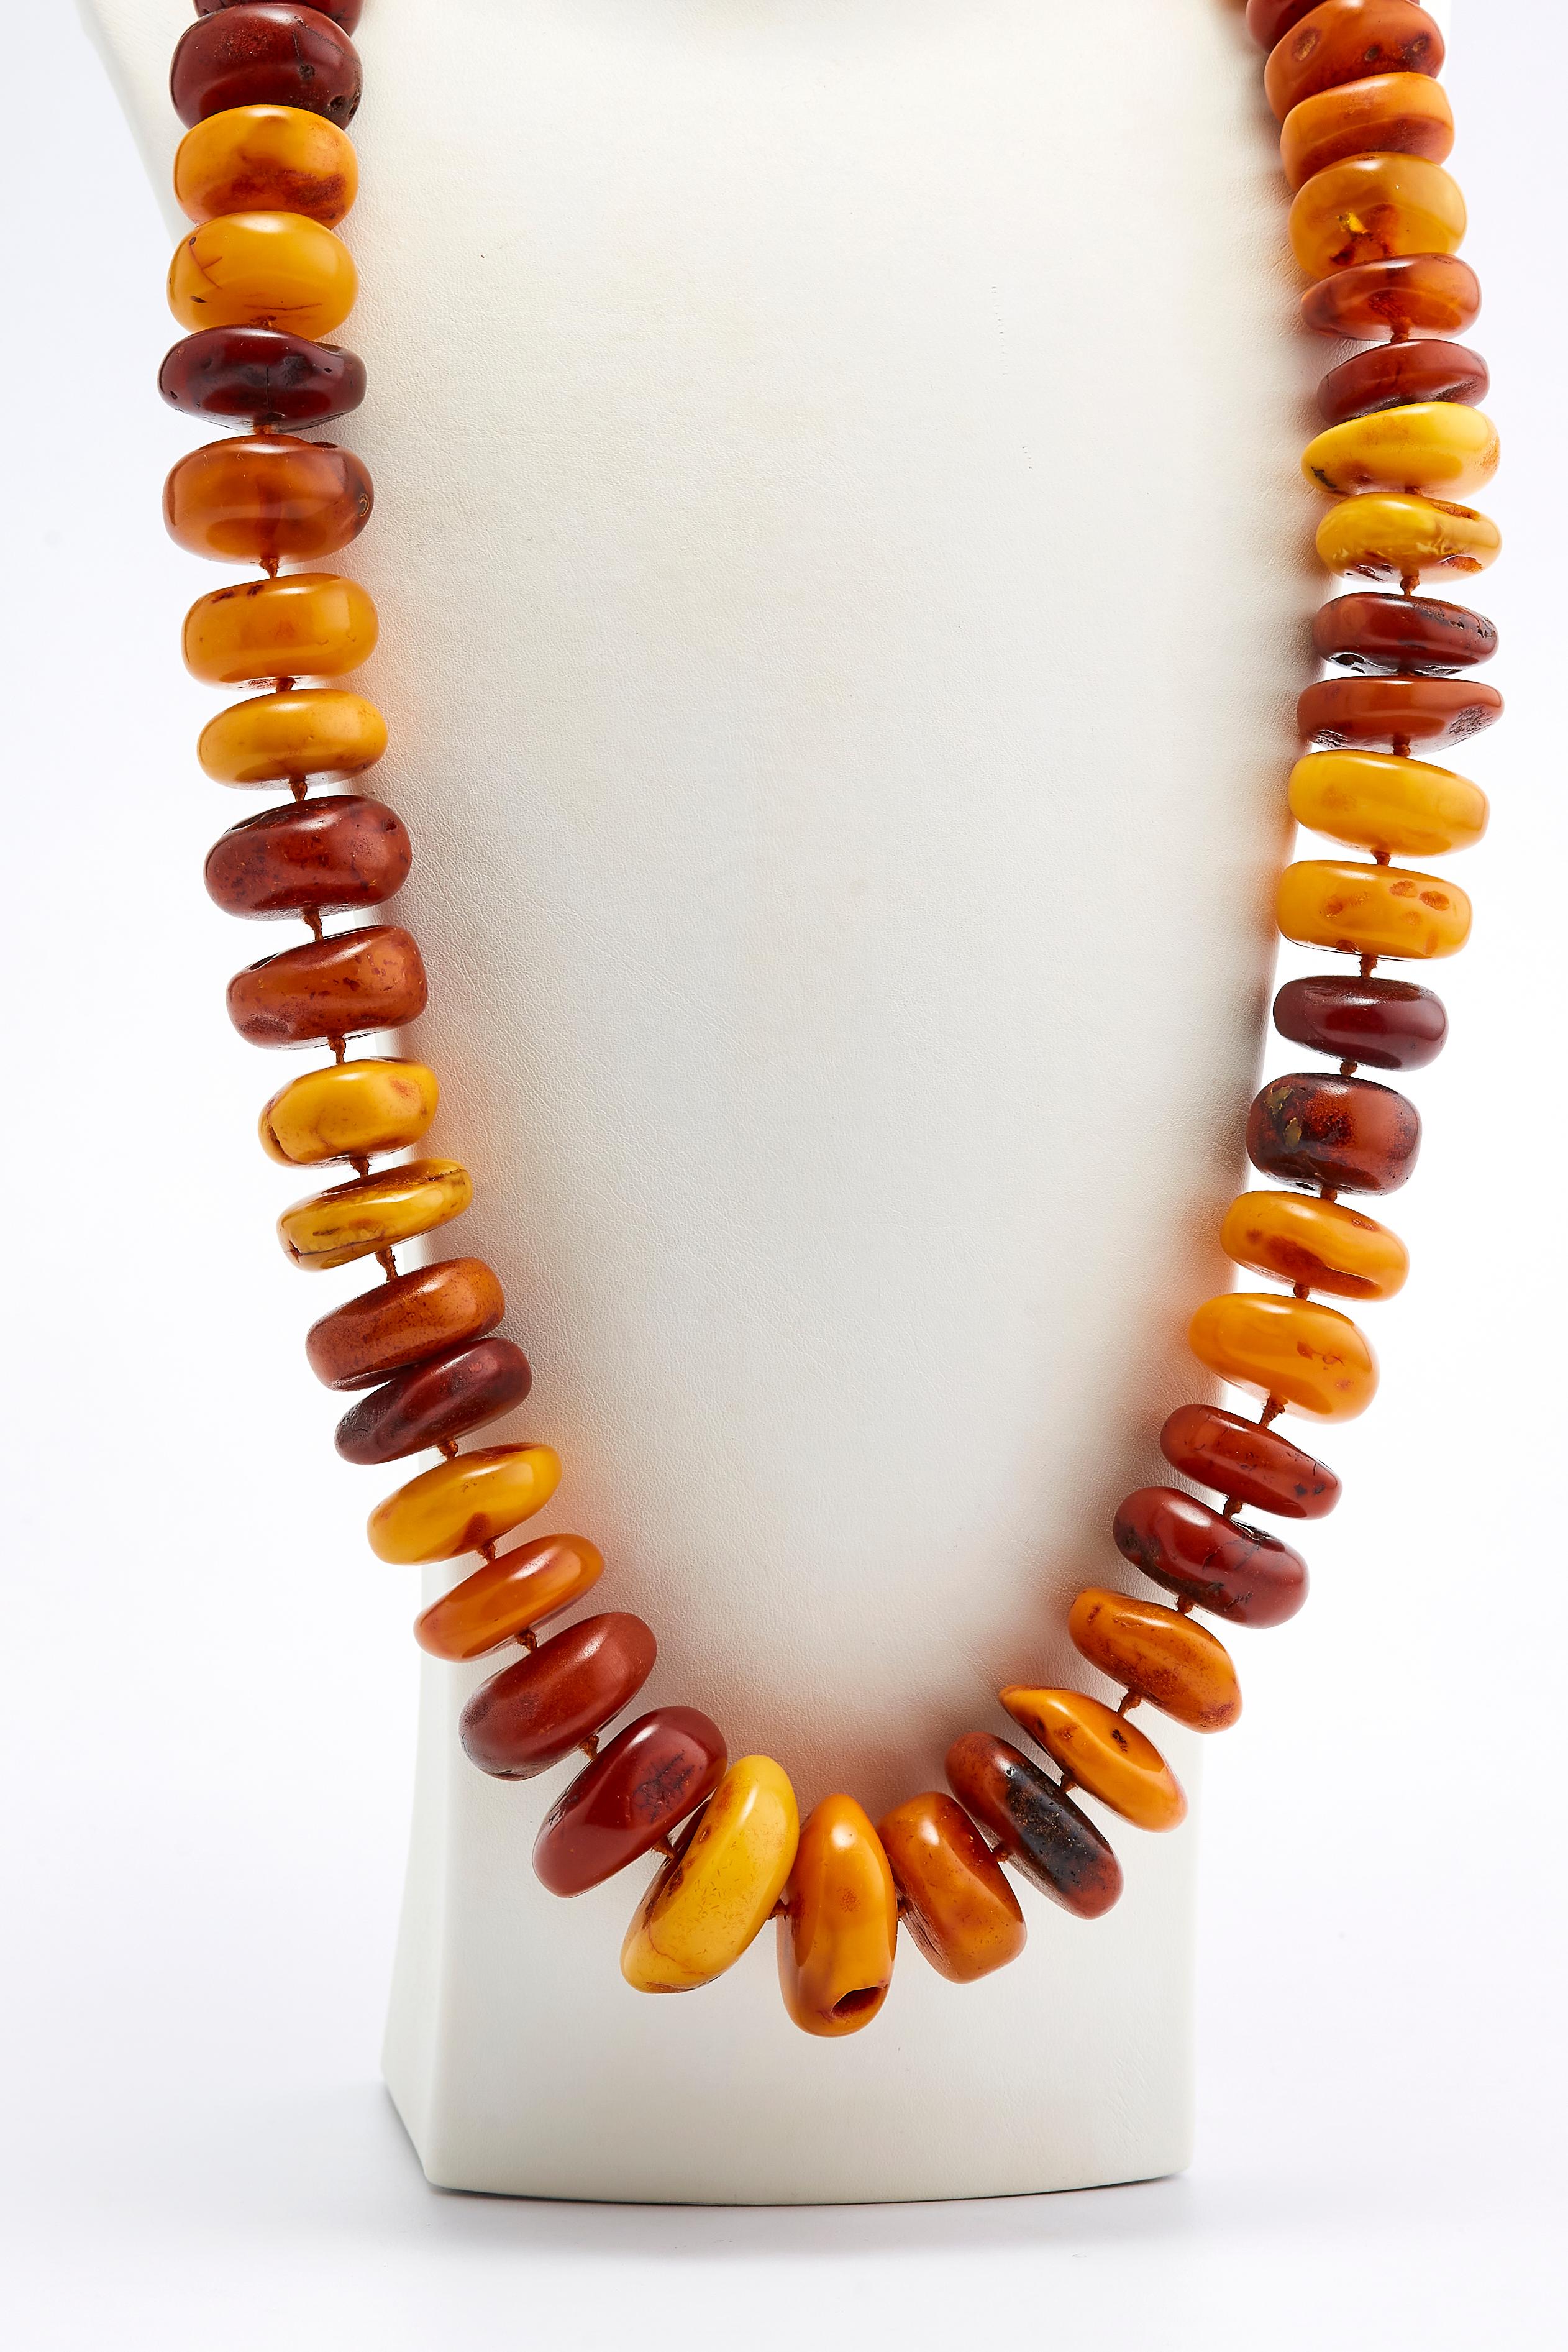 Antike Bernstein-Halskette

Wunderschöne Bernsteinkette mit atemberaubenden leuchtenden Farben von Orange, Rot, Braun und Gelb. 
Die Halskette wurde in den 1890er Jahren in Russland hergestellt.
 Gesamtgewicht: 330 Gramm.